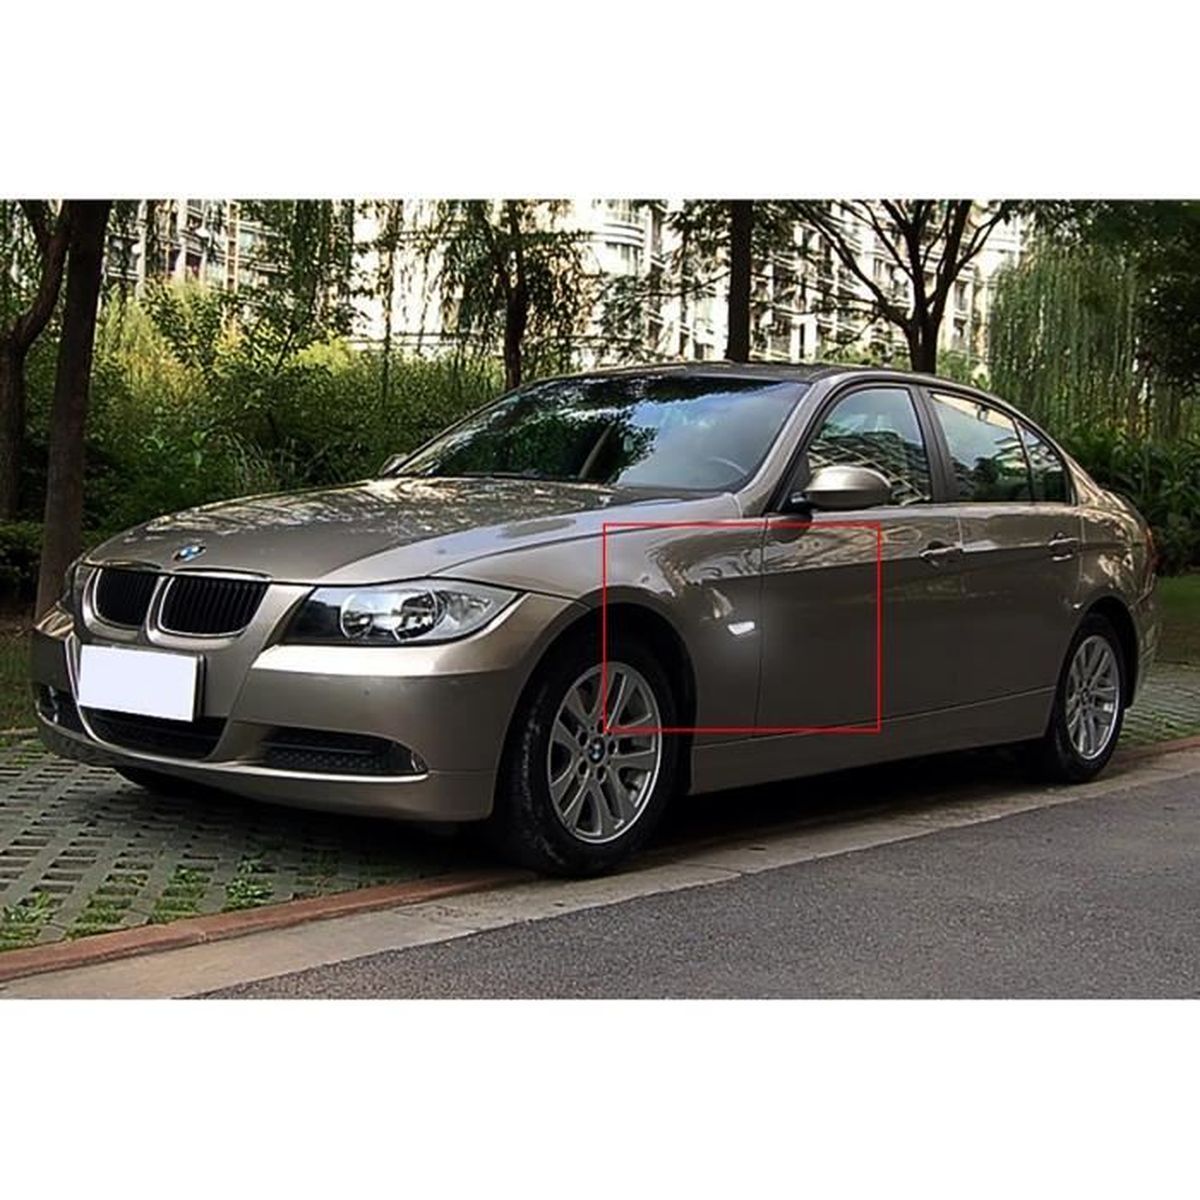 AILE AVANT GAUCHE POUR BMW X1 E84 2009-2015 AVEC TROU RÉPÉTITEUR D'AILE